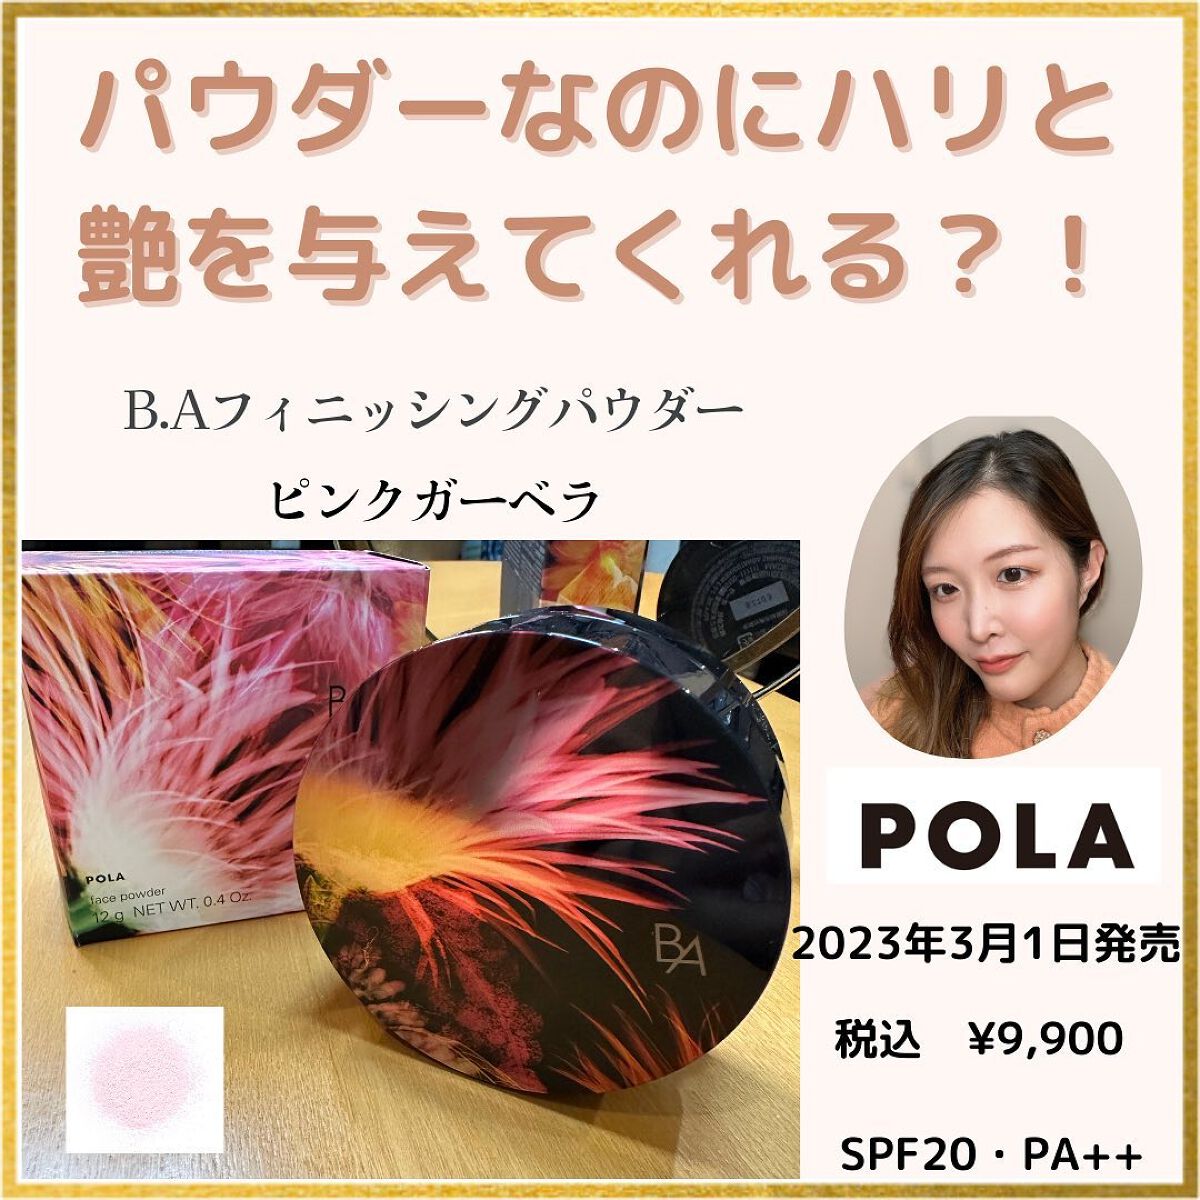 【数量限定】POLA BA フィニッシングパウダー ピンクガーベラ 12g